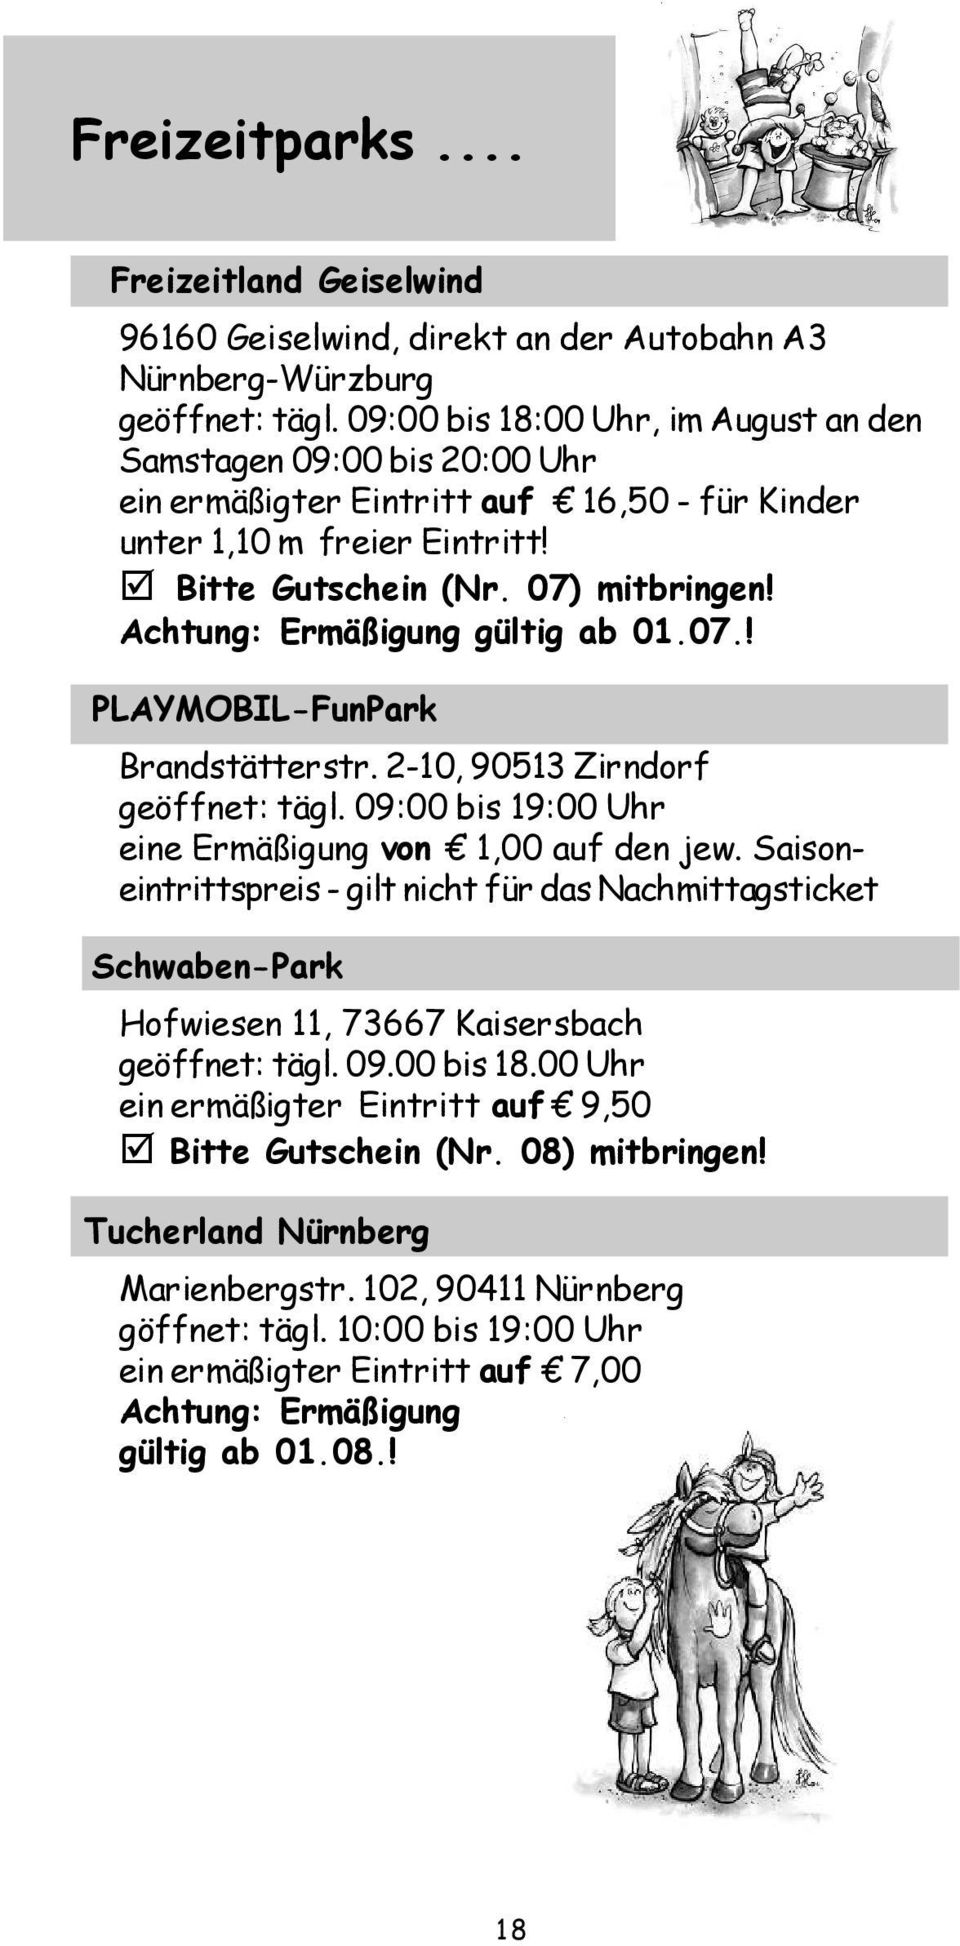 Achtung: Ermäßigung gültig ab 01.07.! PLAYMOBIL-FunPark Brandstätterstr. 2-10, 90513 Zirndorf geöffnet: tägl. 09:00 bis 19:00 Uhr eine Ermäßigung von 1,00 auf den jew.